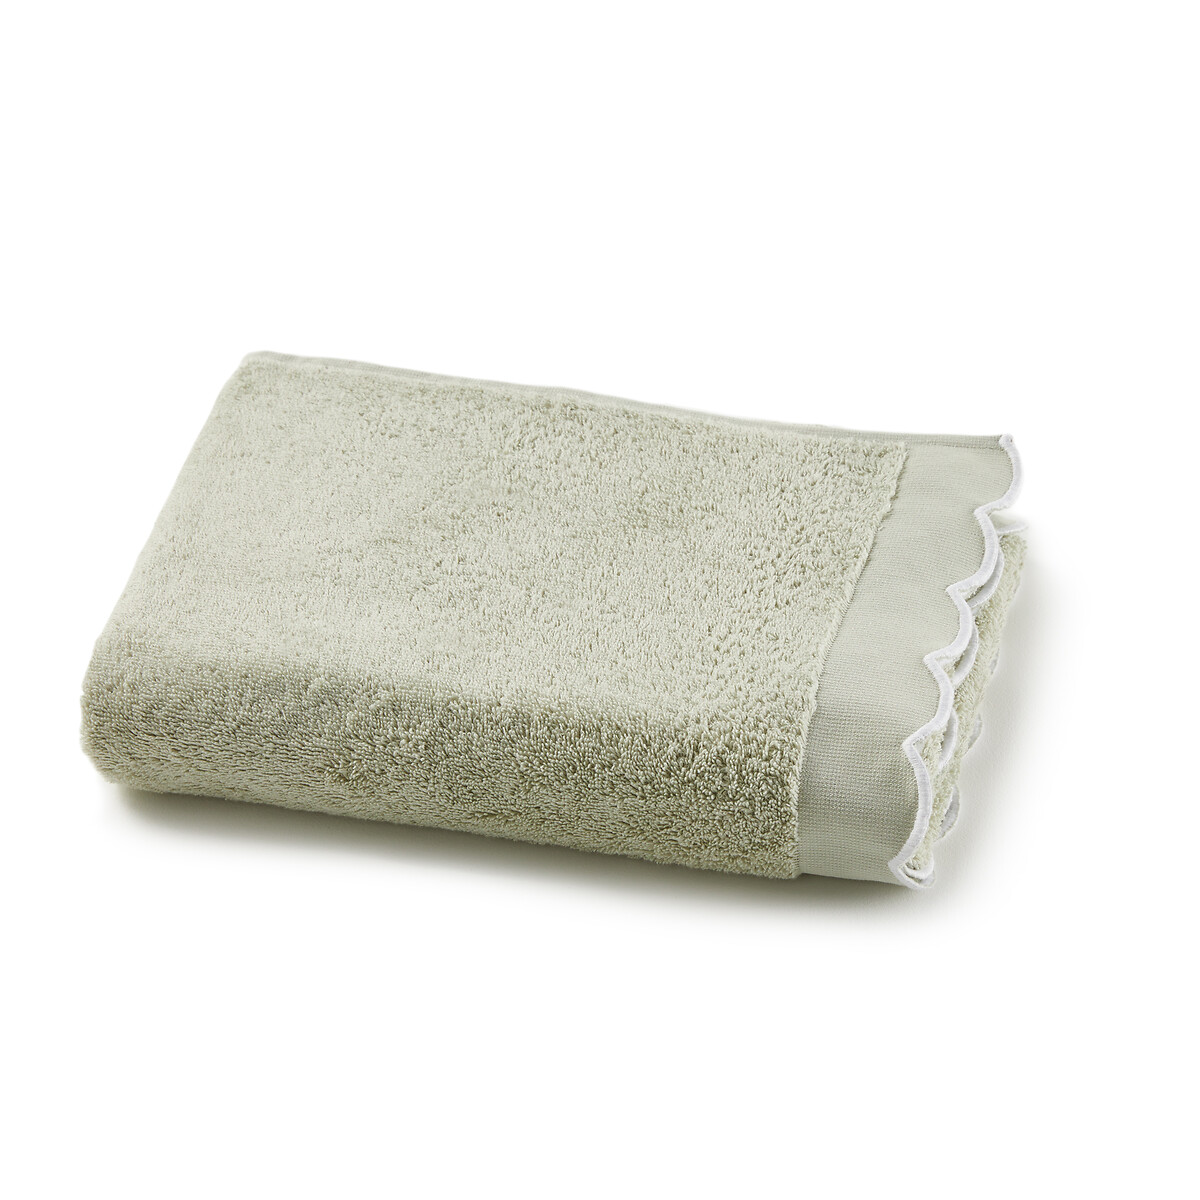 Полотенце банное однотонное из махровой ткани 500 гм Antoinette 70 x 140 см зеленый полотенце банное из велюра 500 гм2 milleraie 70 x 140 см белый